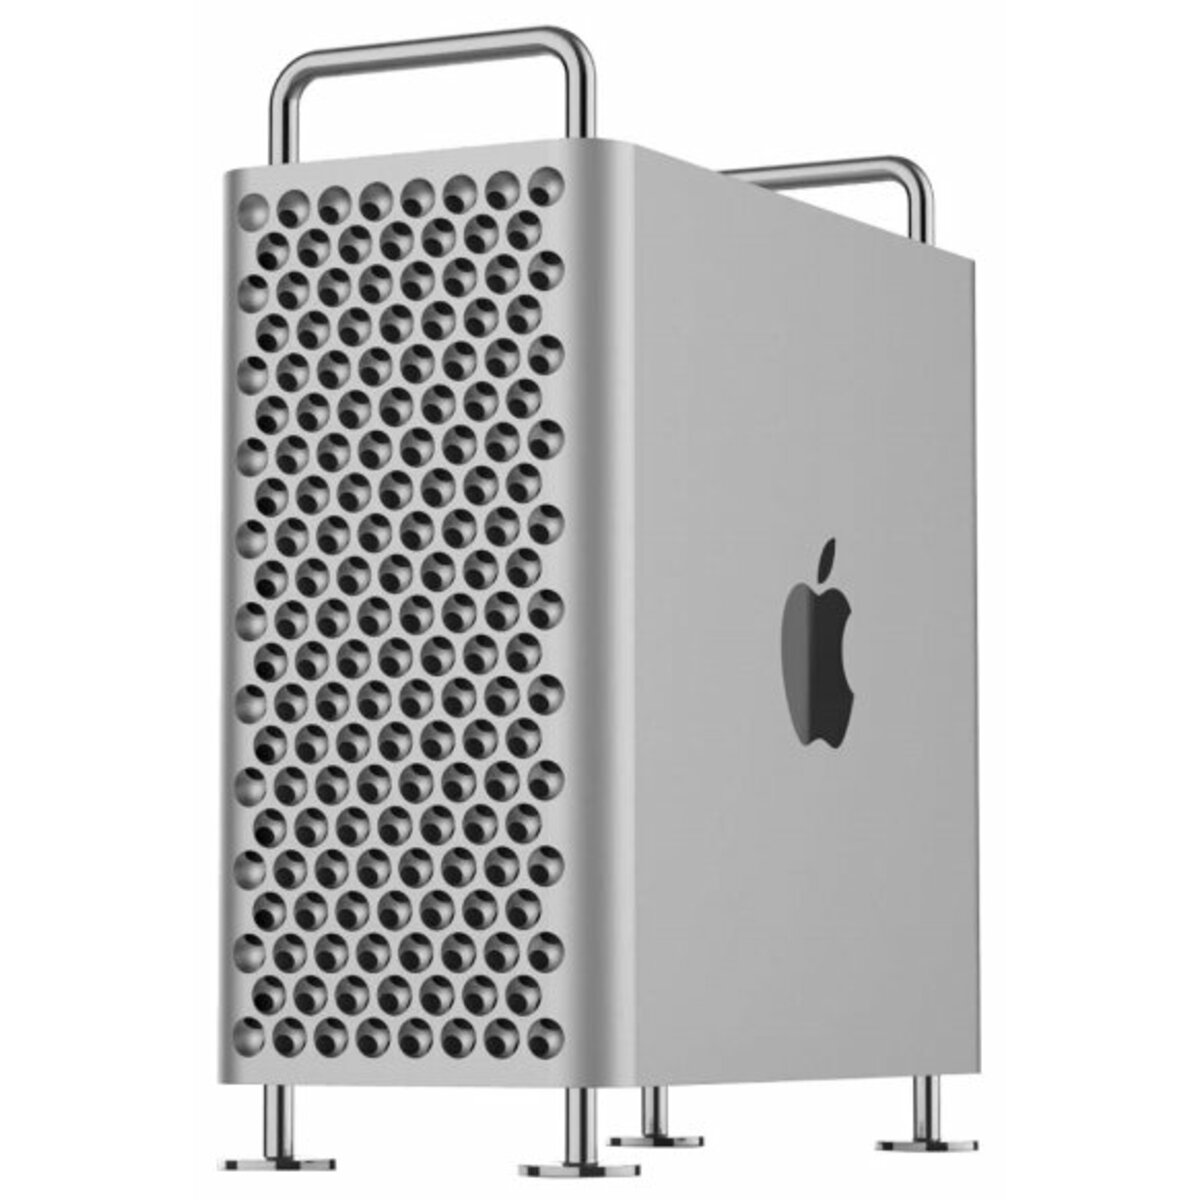 ПК Apple Mac Pro Z0YZ000WR Xeon W-3265 (2.7) / 192Gb / SSD4Tb / Pro 580X 8Gb / Mac OS X / GbitEth / WiFi / BT / черный